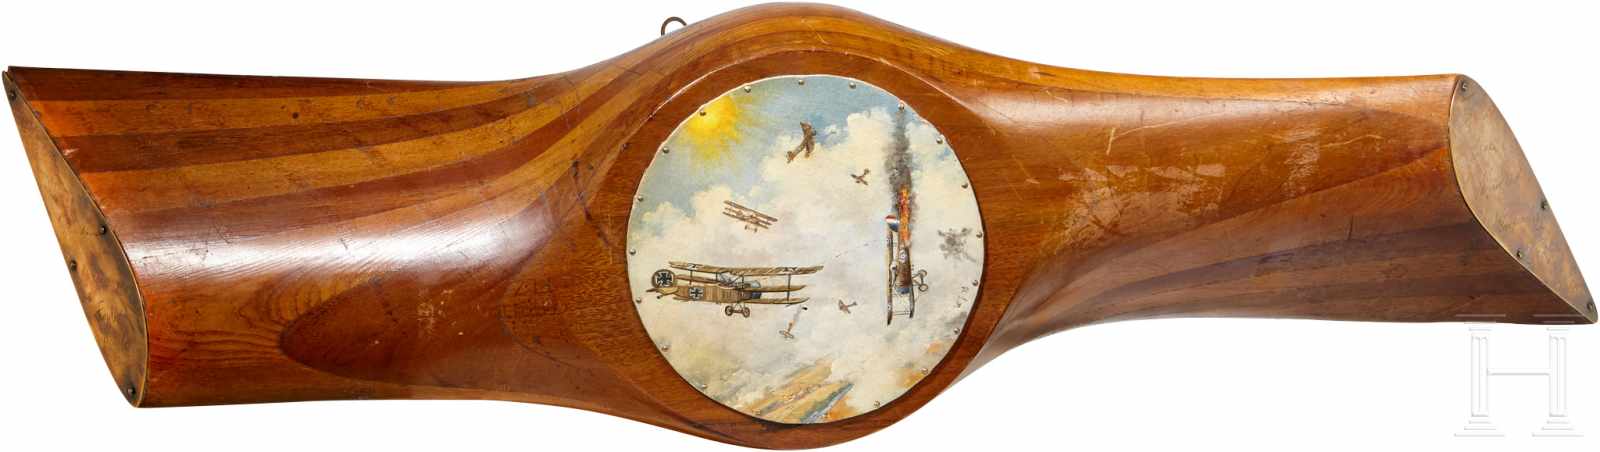 PropellerfragmentPropellerfragment aus Holz der Fliegertruppe des 1. Weltkriegs. Die verkürzten Arme - Image 2 of 6